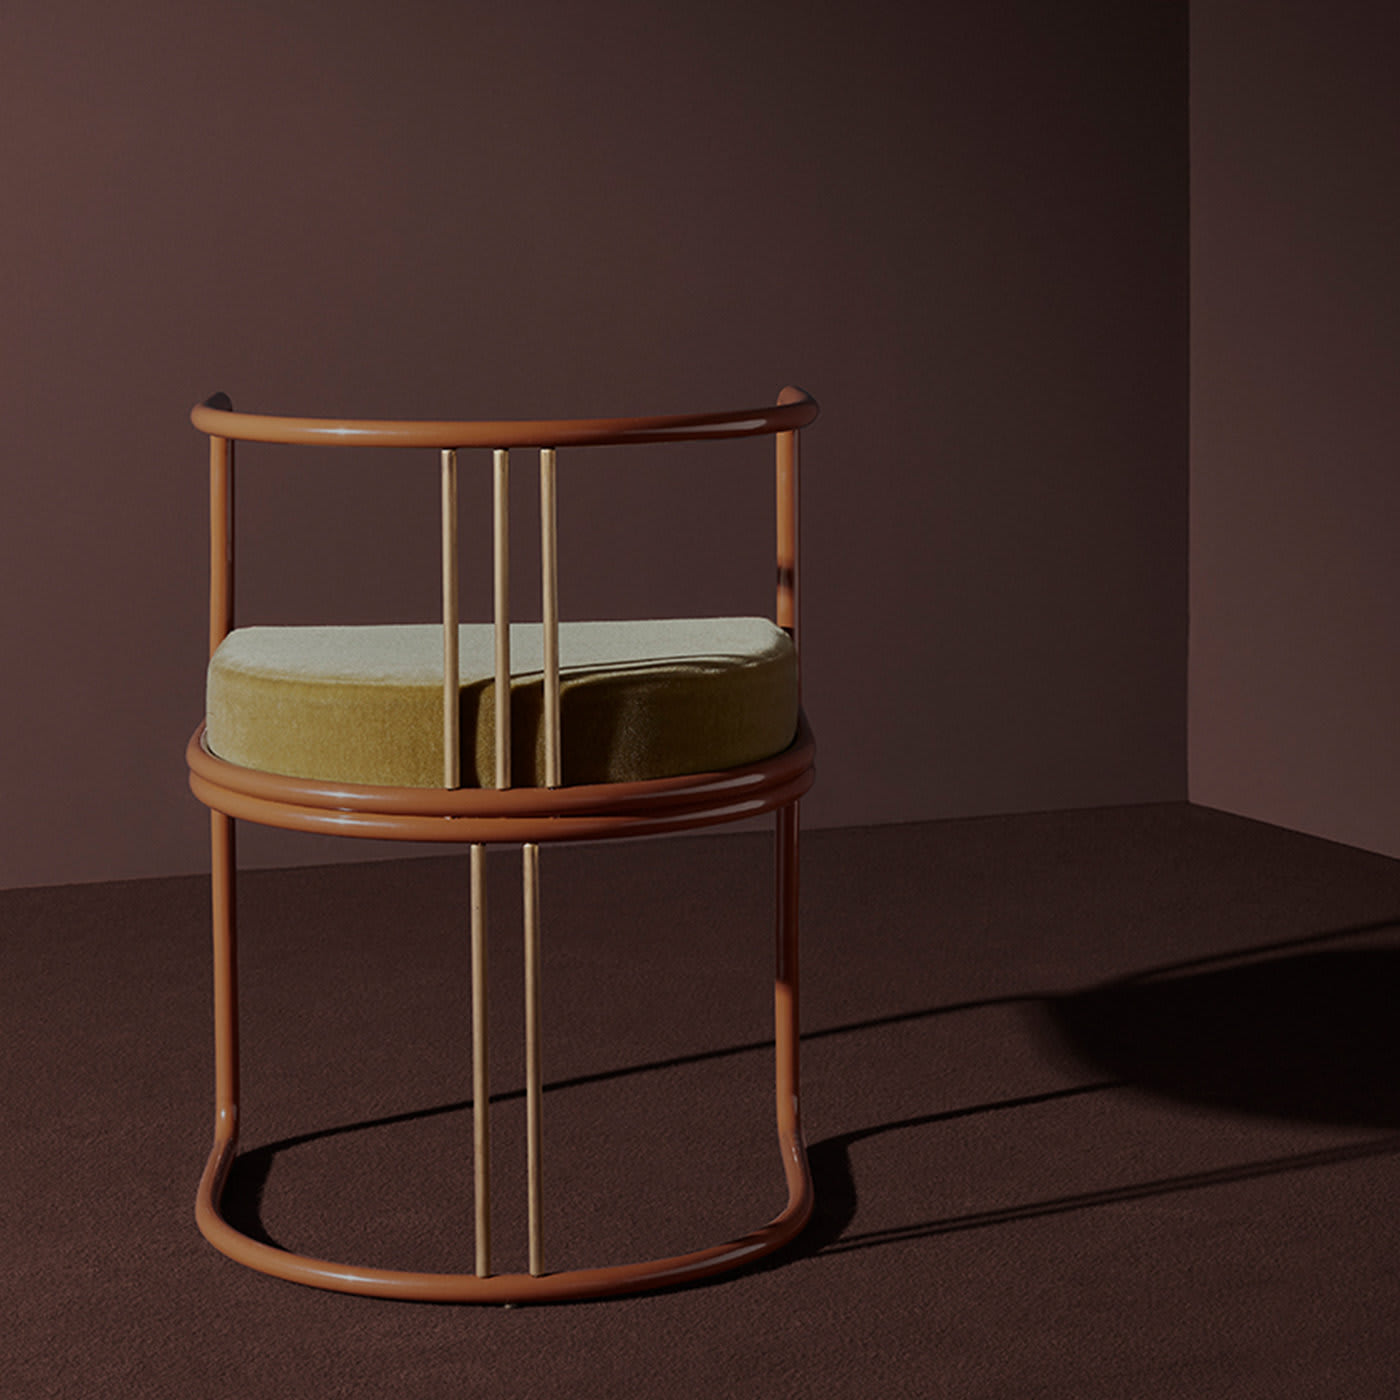 Razionalista Green Chair by DimoreStudio - Dimoremilano